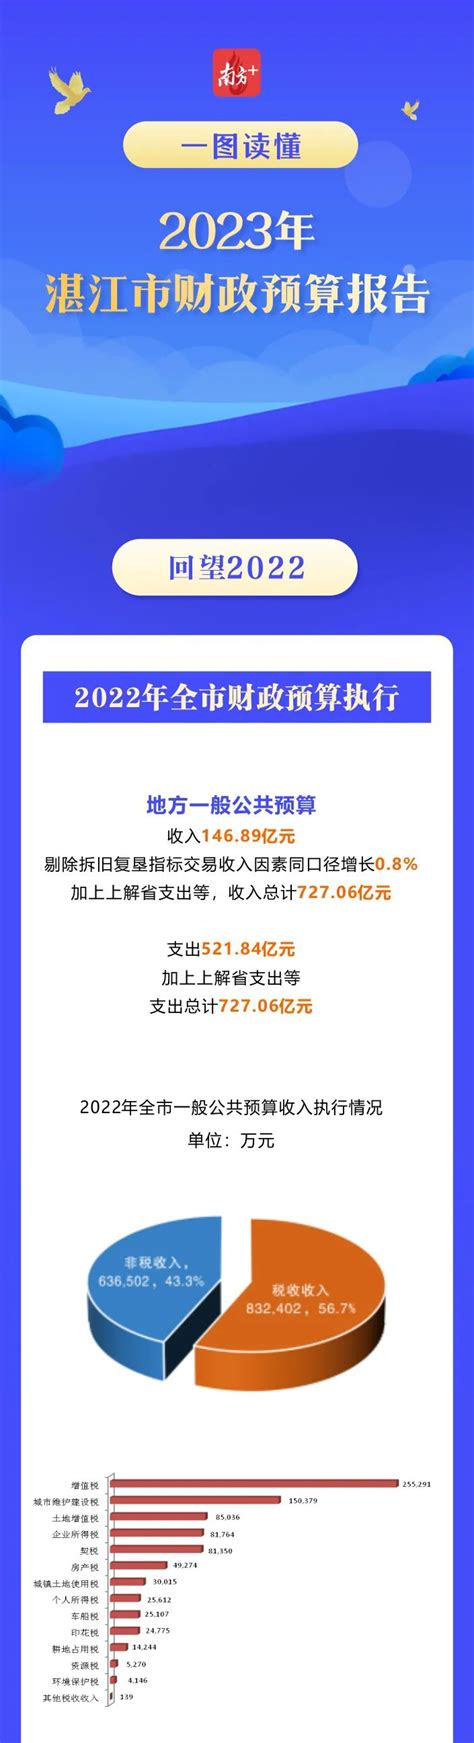 一图读懂2023年湛江市财政预算报告_湛江市人民政府门户网站